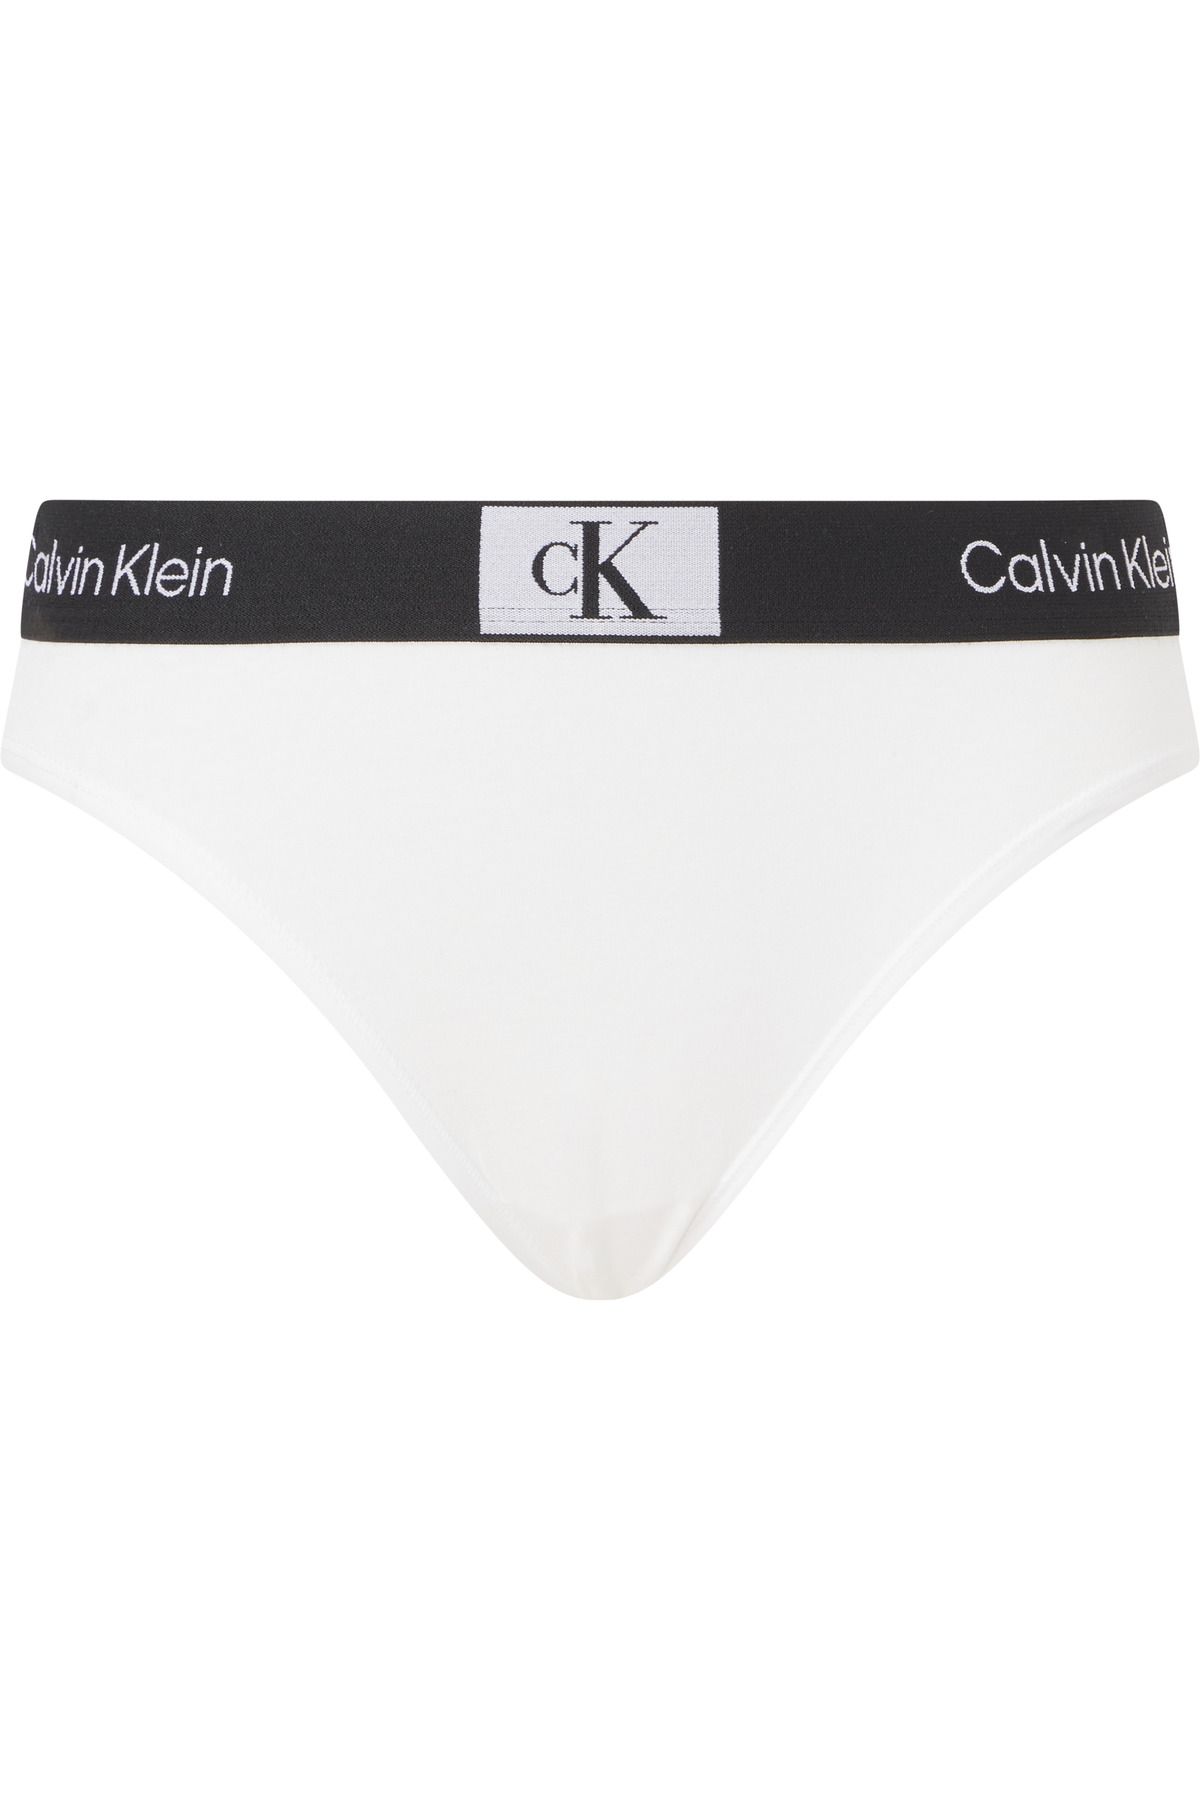 Calvin Klein İmzalı Elastik Bantlı Beyaz Külot 000qf7222e-100